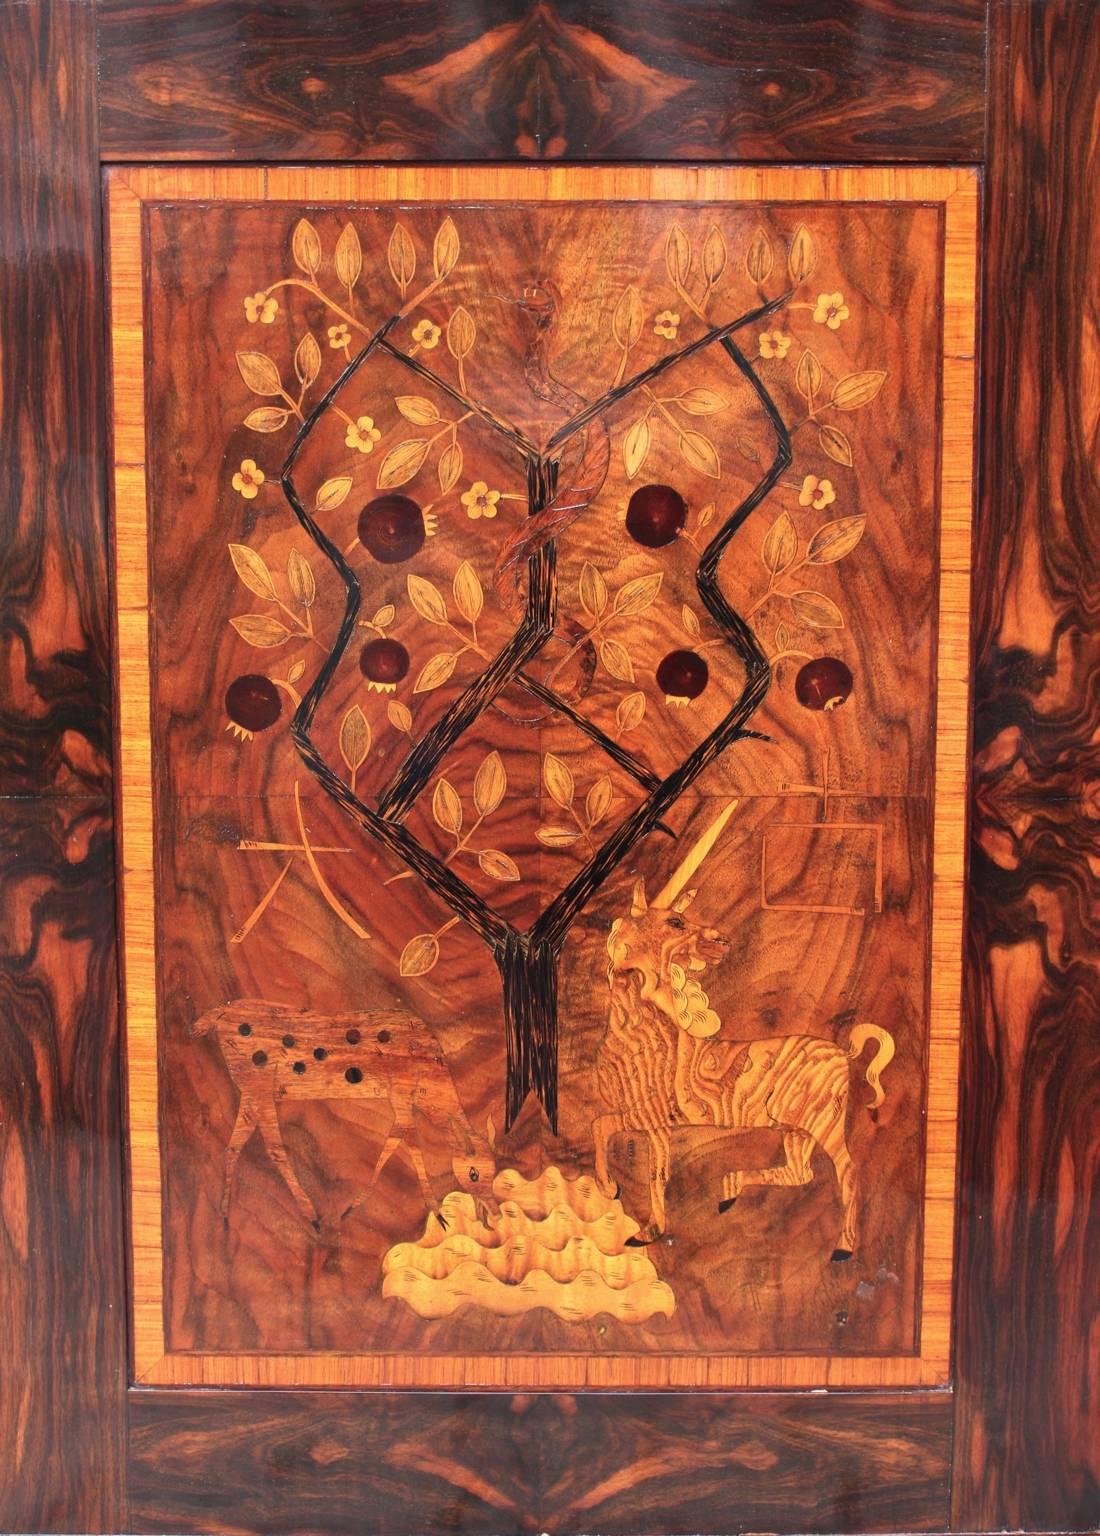 Ein Art-Deco-Intarsienbild im Vintage-Stil, das eine Szene aus dem Paradies mit Adam und Eva zeigt.

Das Holzbild wurde aus verschiedenen Holzarten hergestellt, z. B. aus Palmenholz, Palisander, Walnuss, Esche und Ahorn.
Alle Maße sind